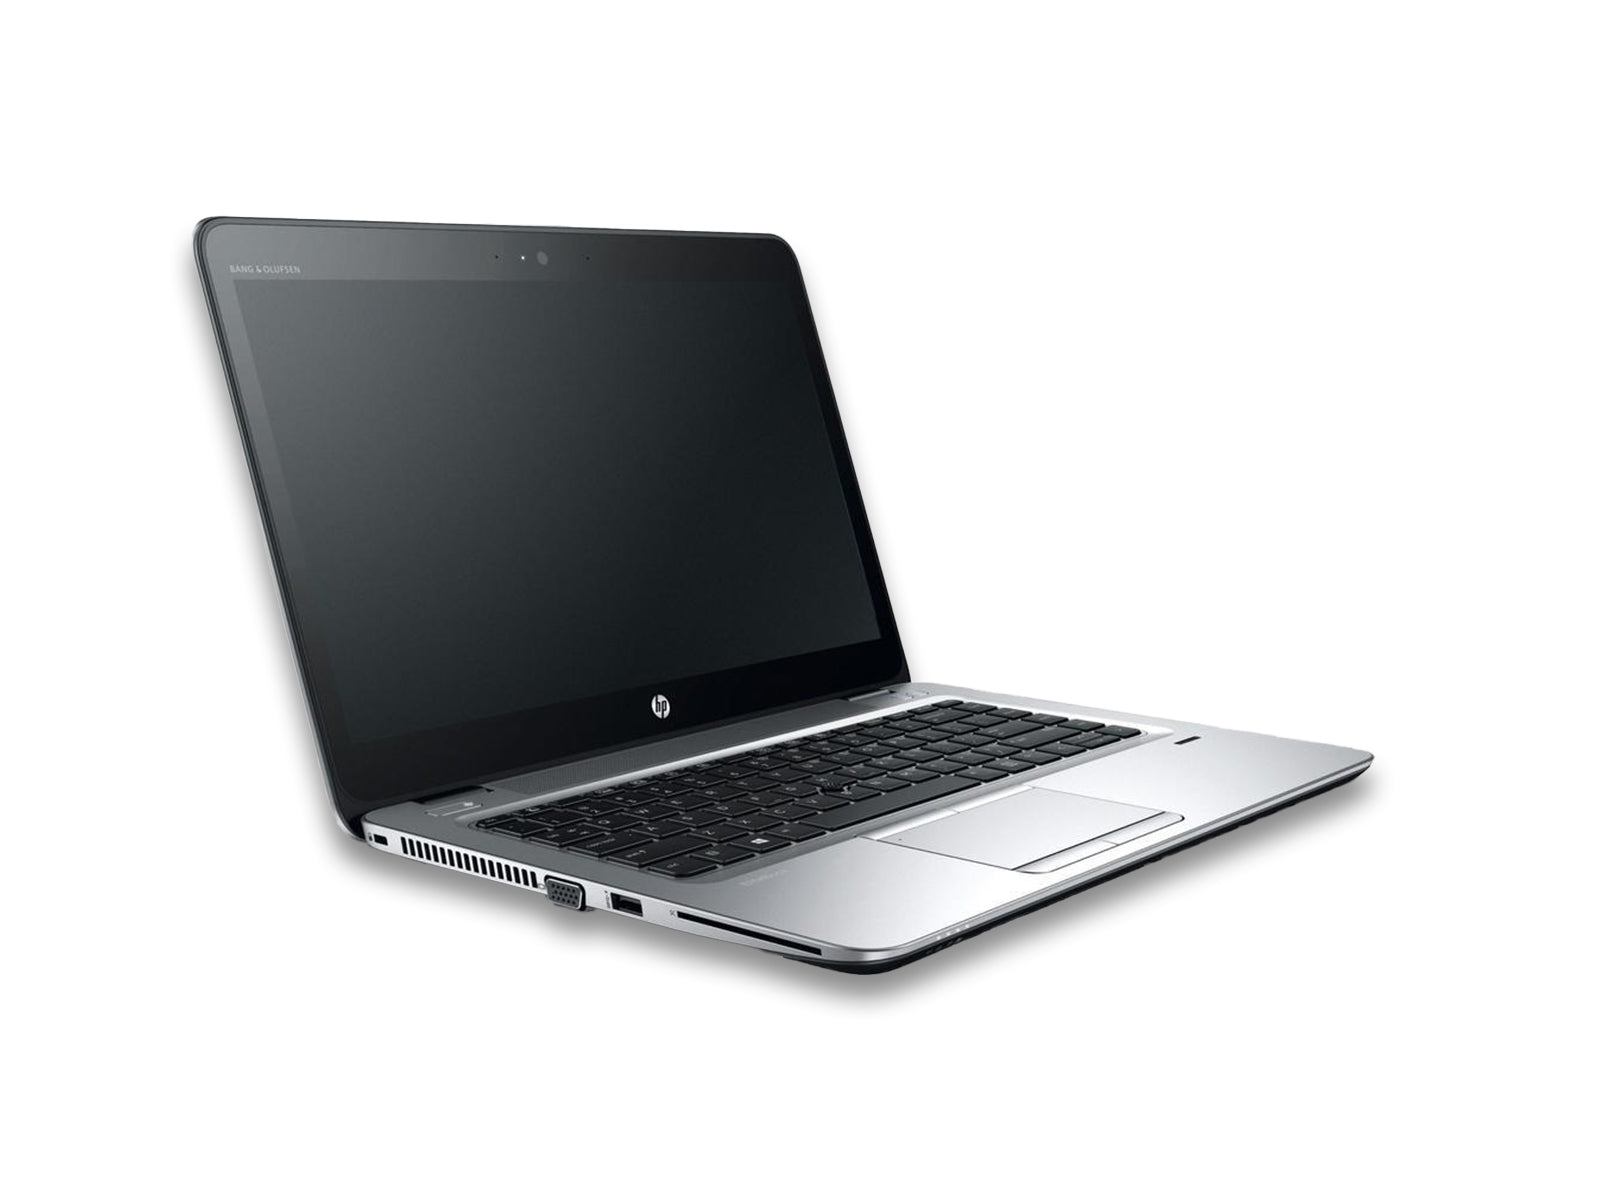 HP EliteBook 840 G3 Notebook Side View Display Off